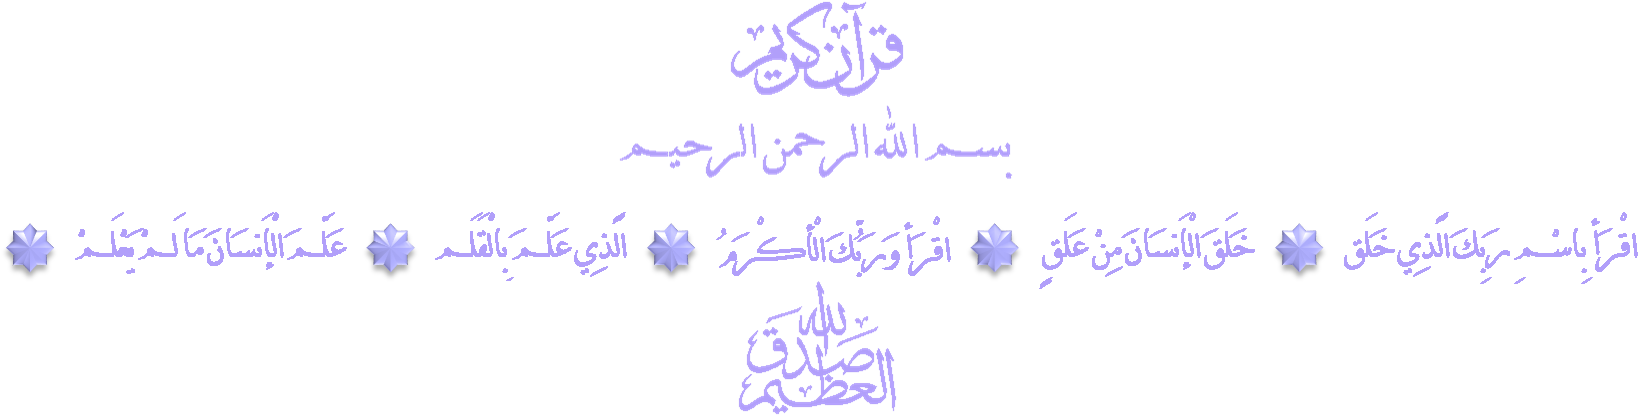 Arabic Calligraphy Bismillah PNG image